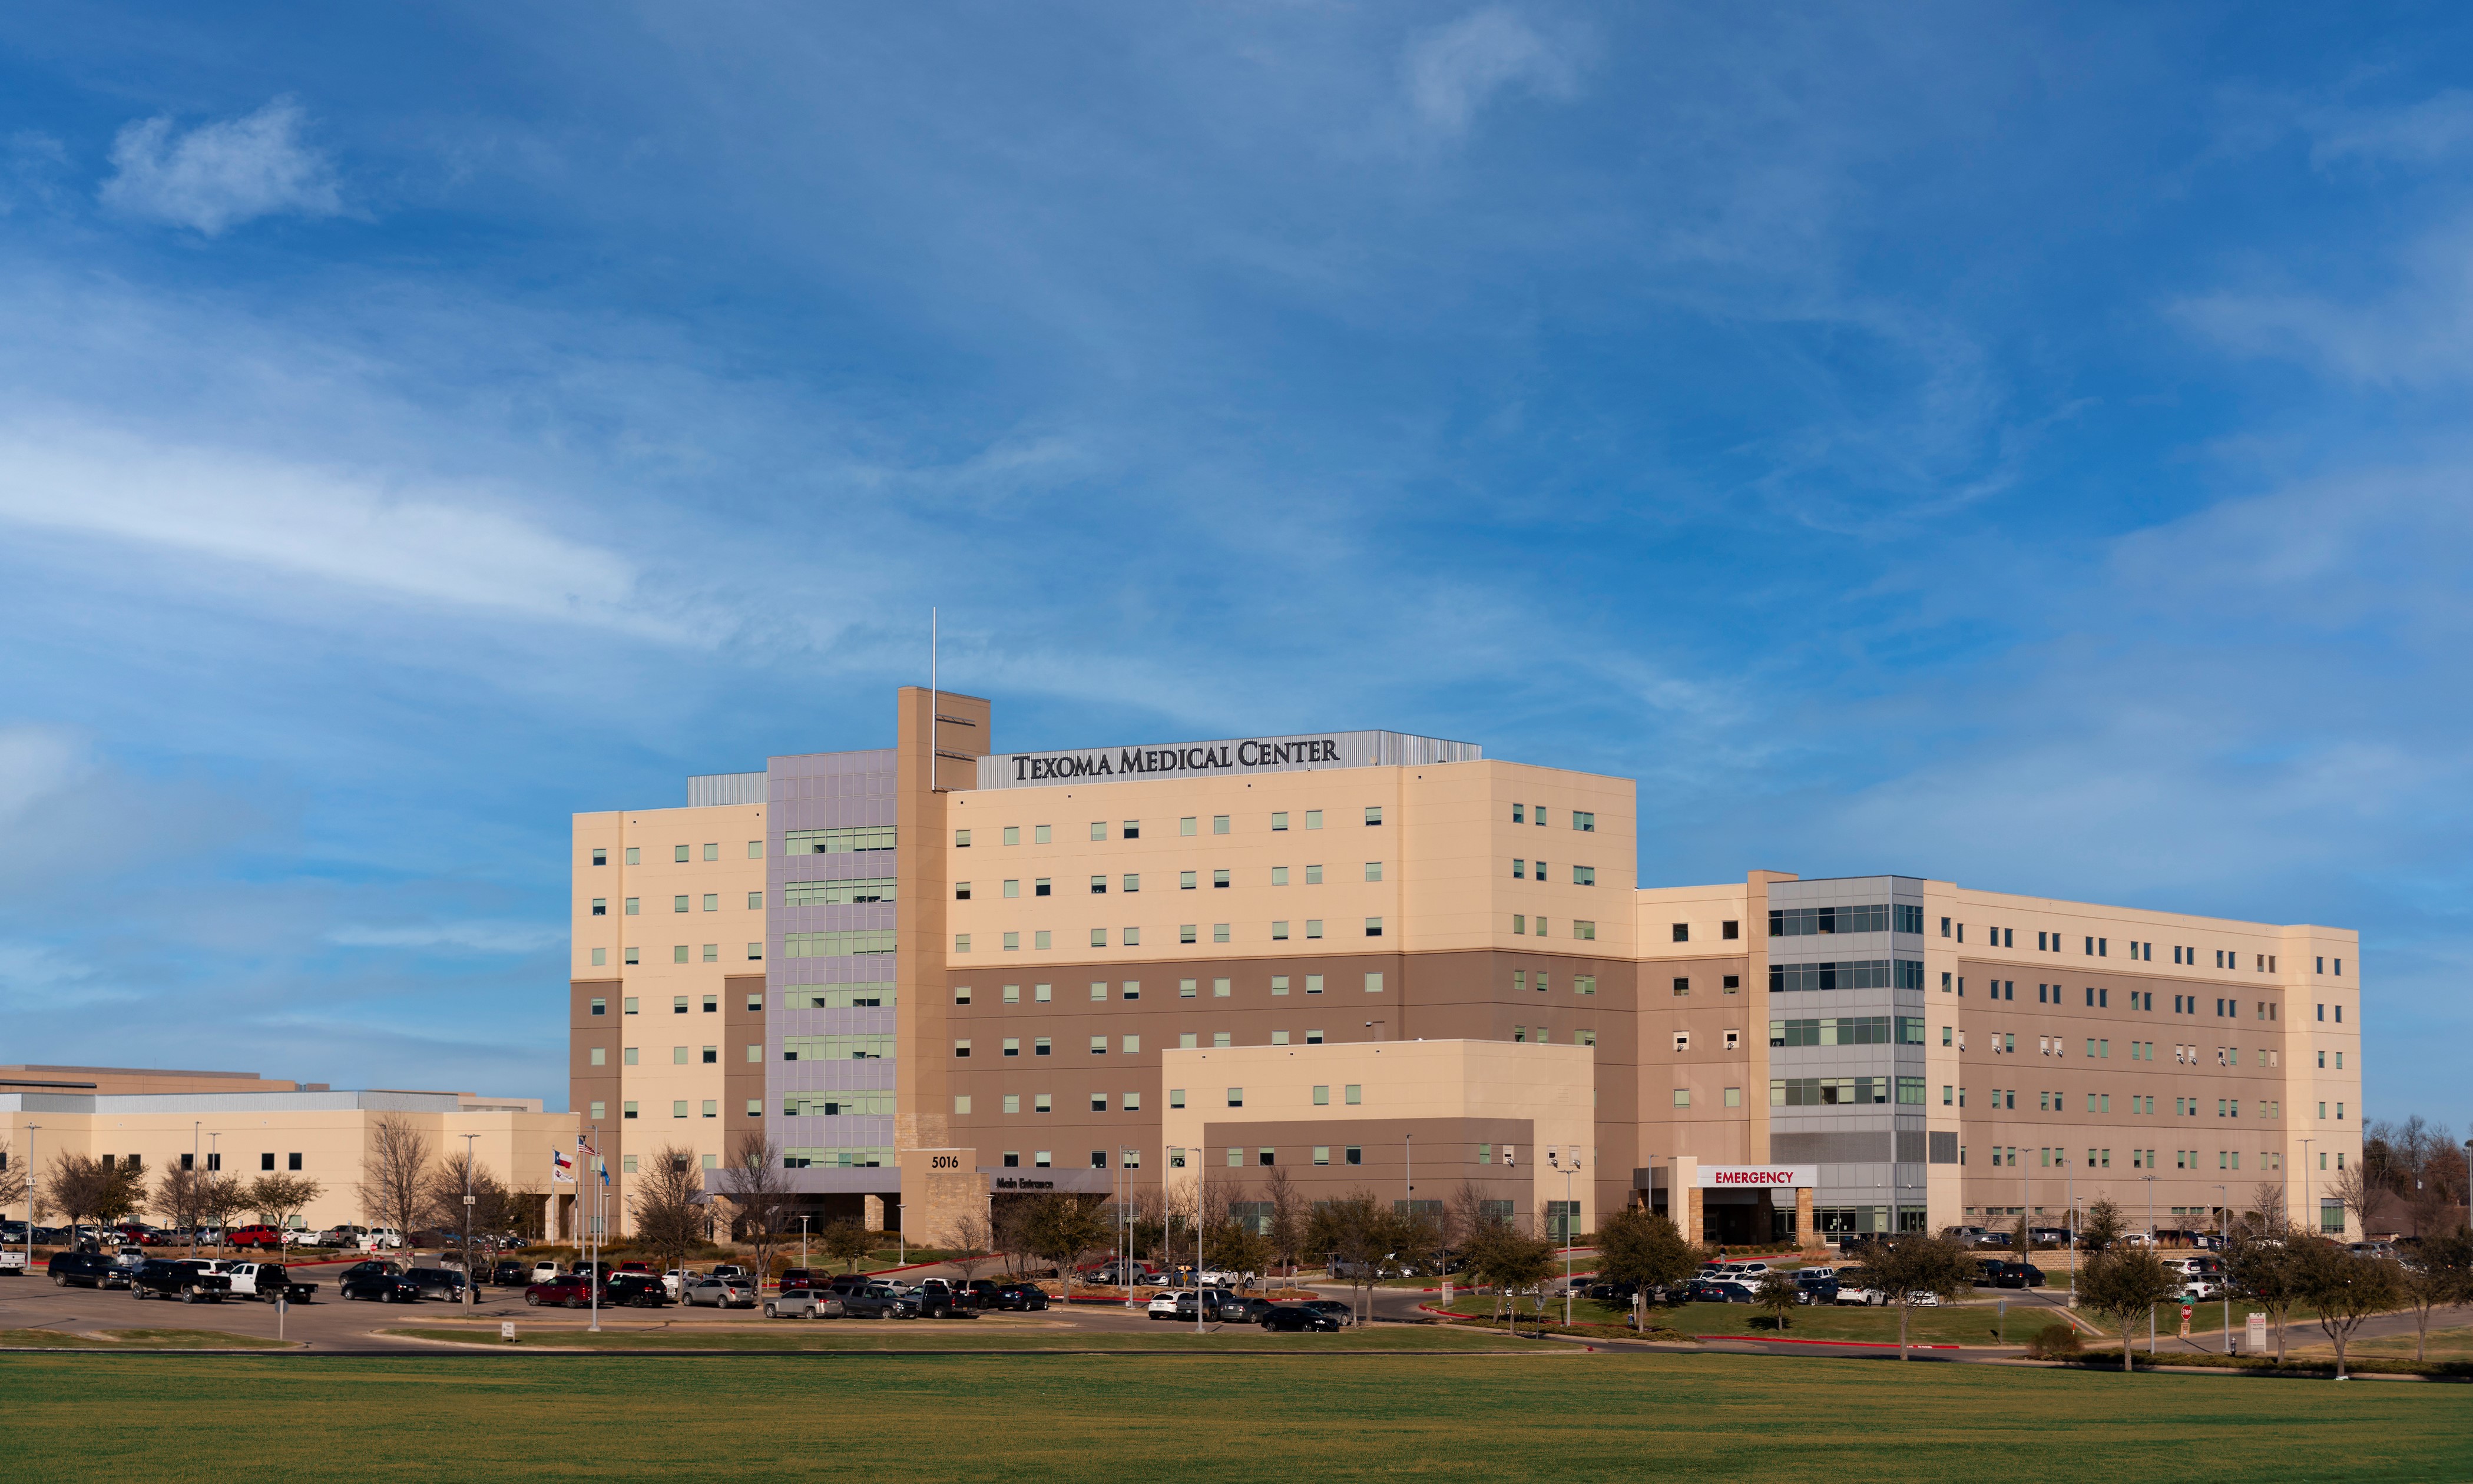 Texoma Medical Center ofrece servicios de atención médica de calidad, ubicado en Denison, Texas.